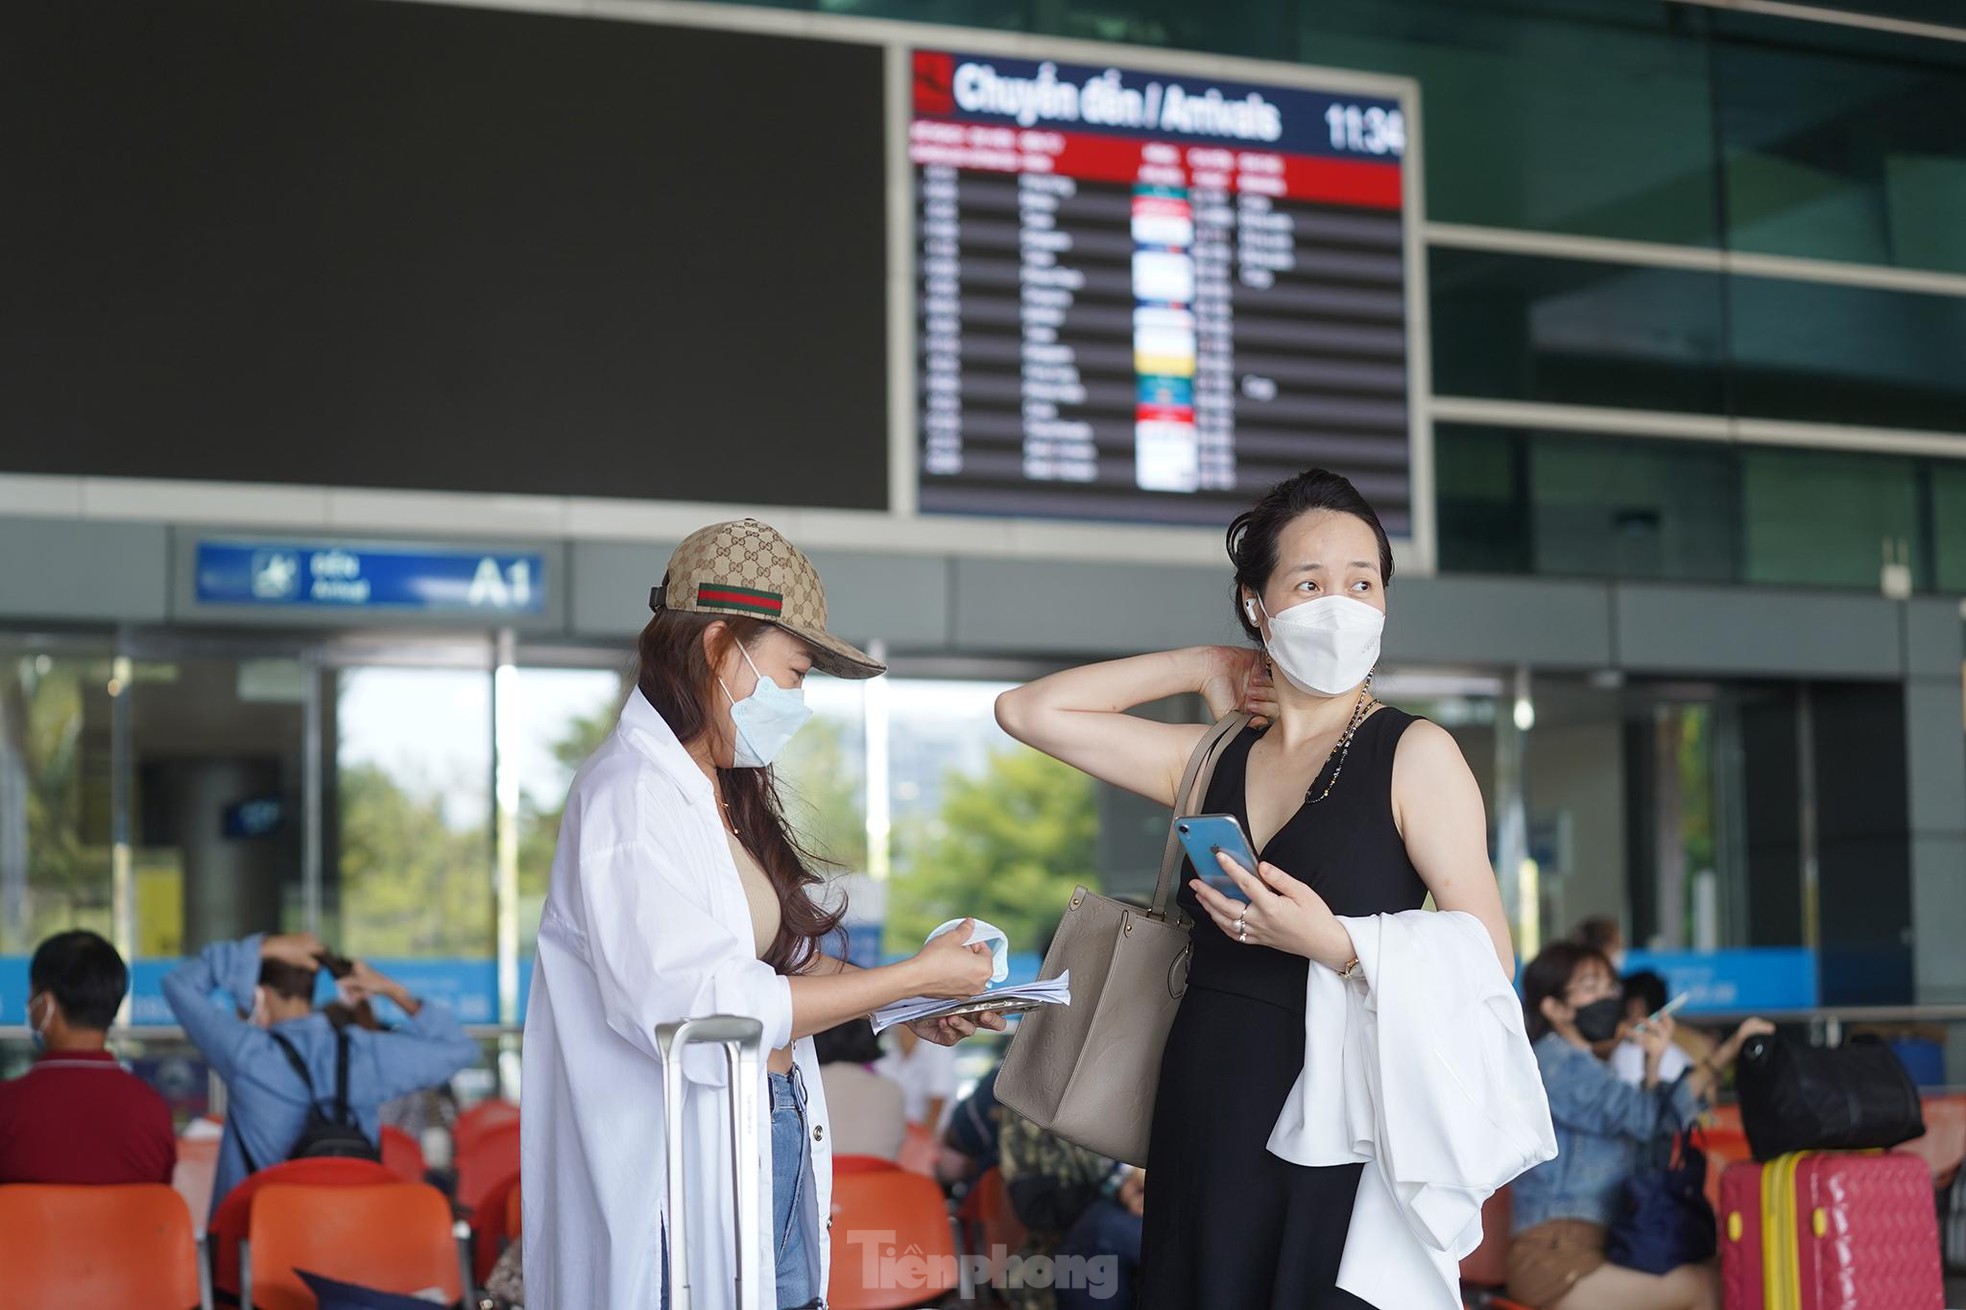 Vỡ òa cảm xúc tại sân bay Tân Sơn Nhất trong ngày đầu mở lại đường bay quốc tế - Ảnh 12.